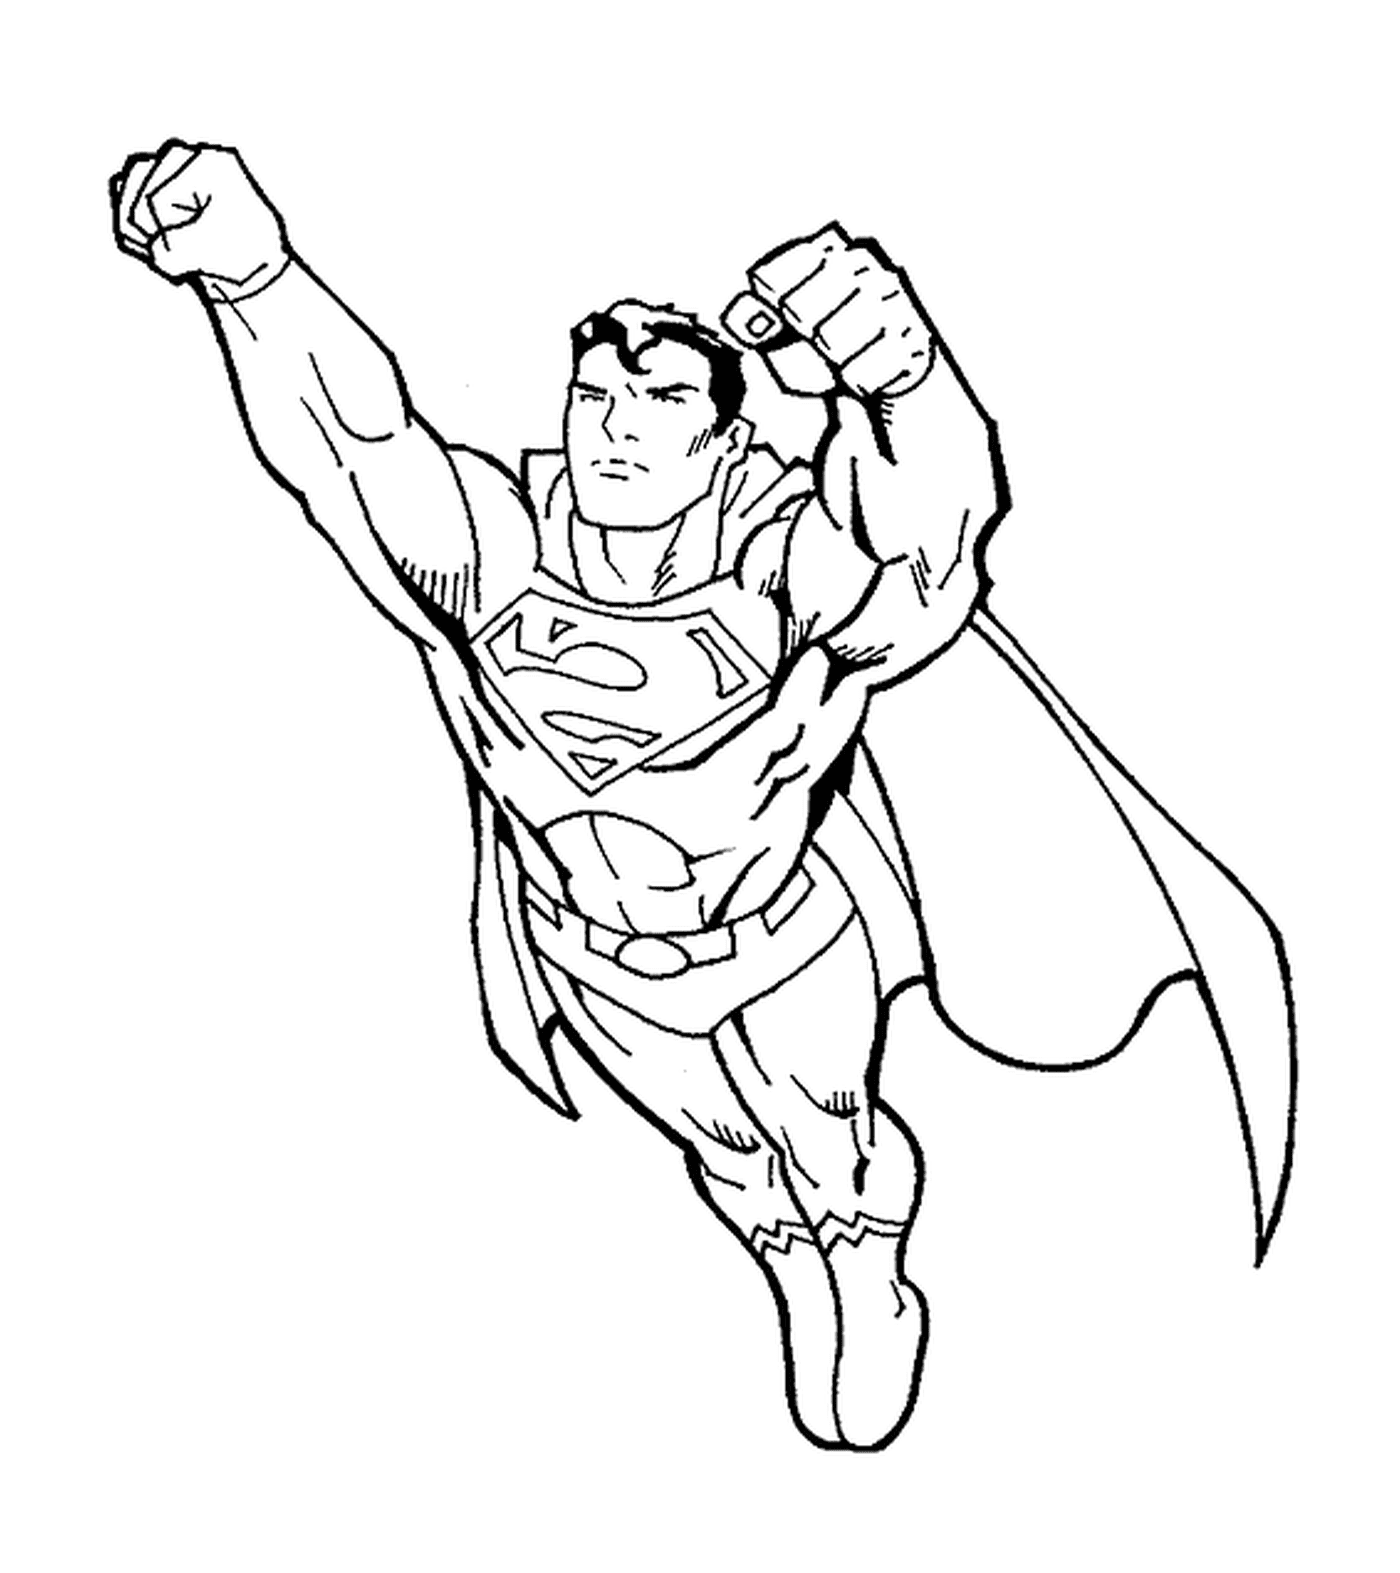  Super-Homem, punhos para a frente 